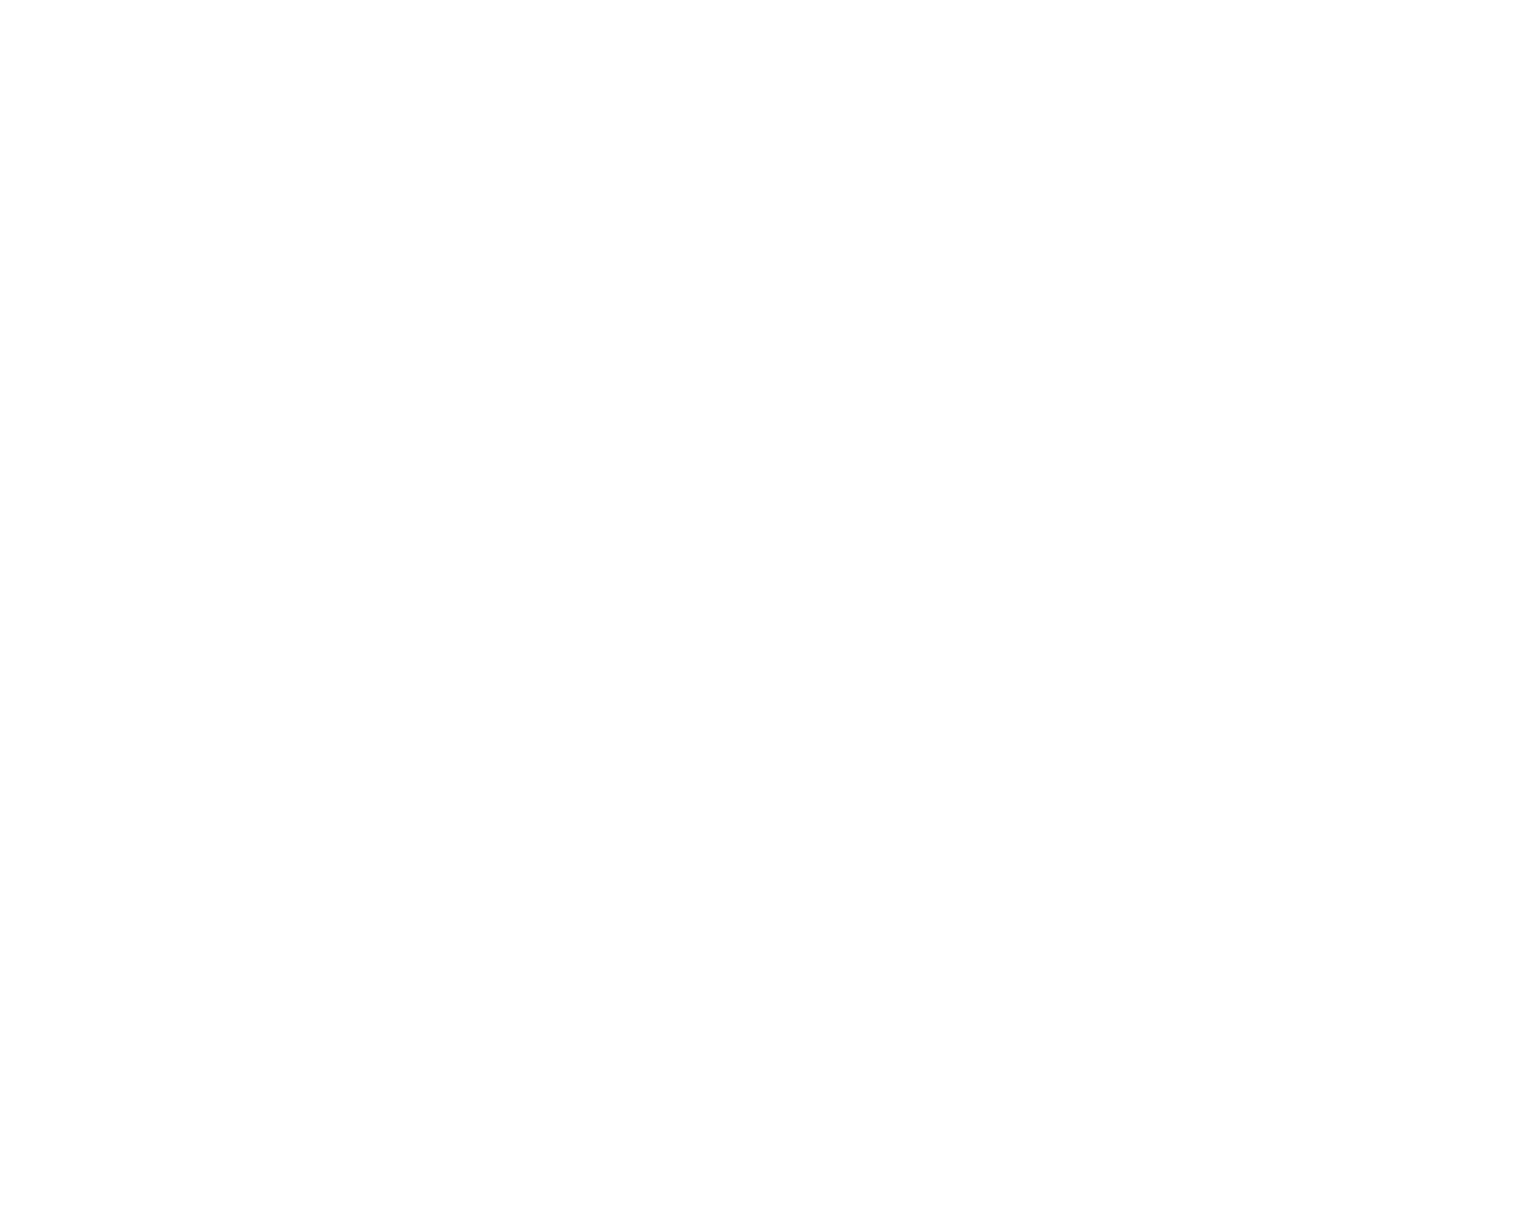 Sampo logo for dark backgrounds (transparent PNG)